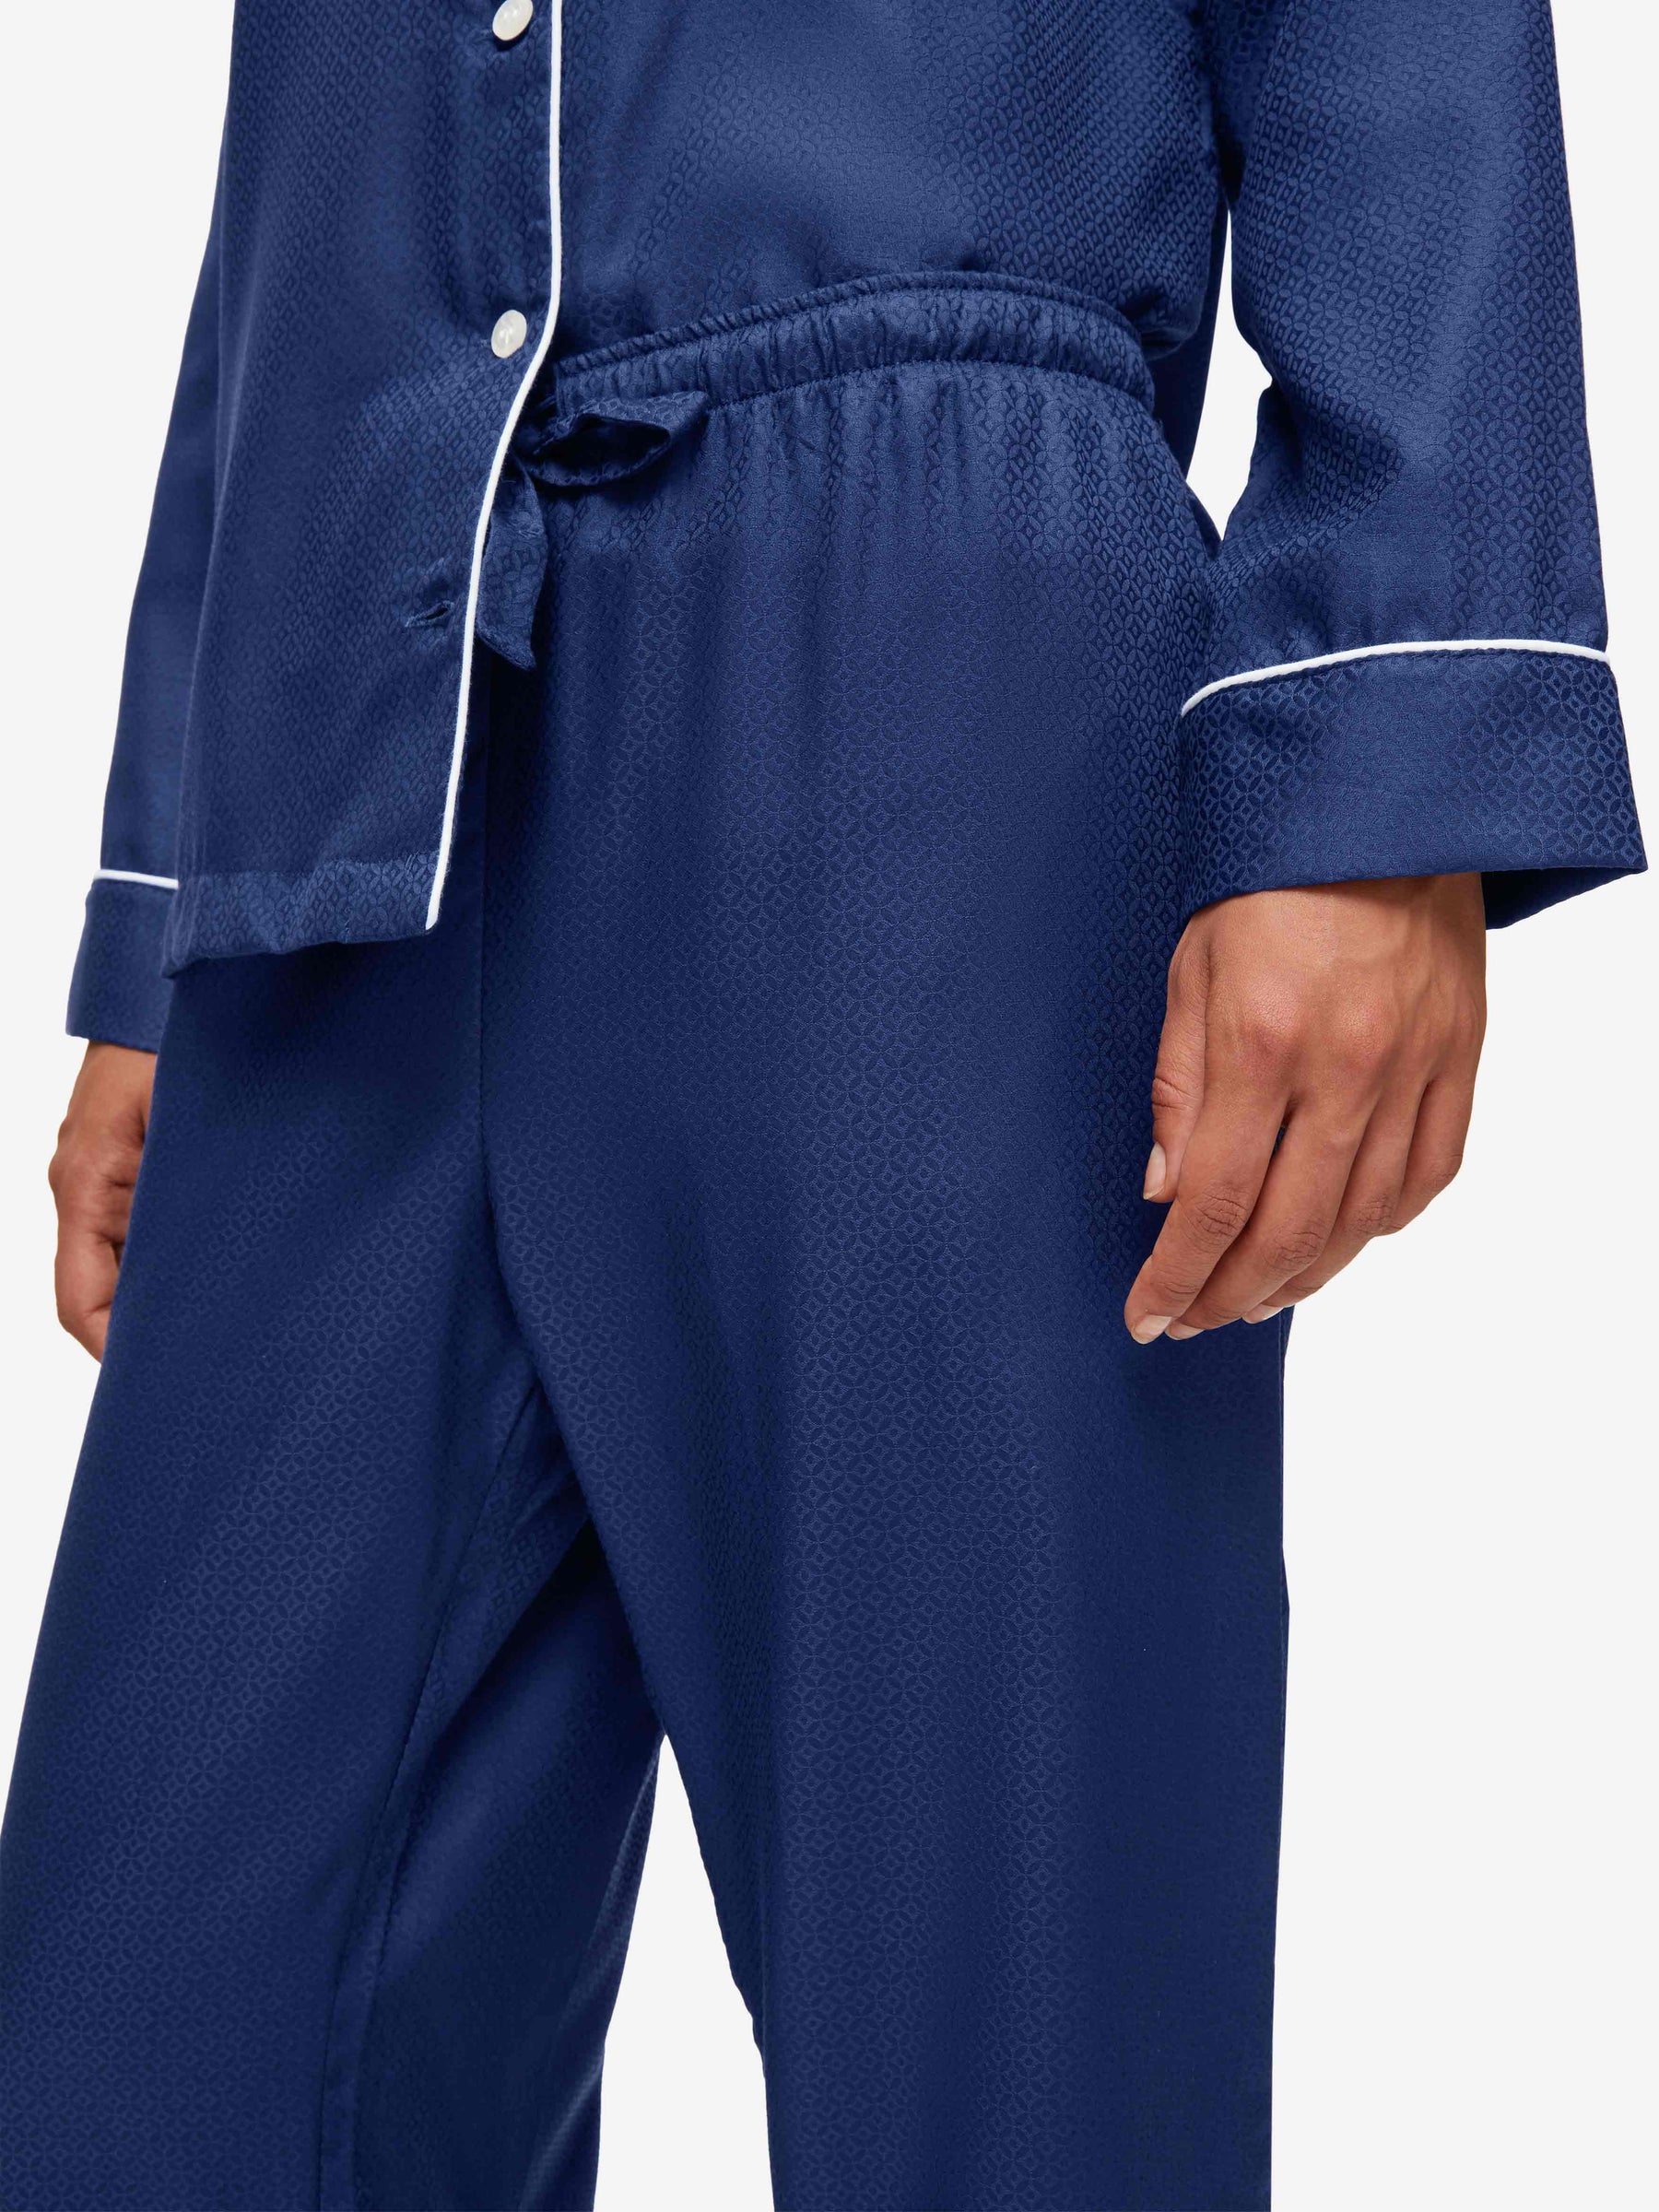 Women's Pyjamas Lombard 6 Cotton Jacquard Navy